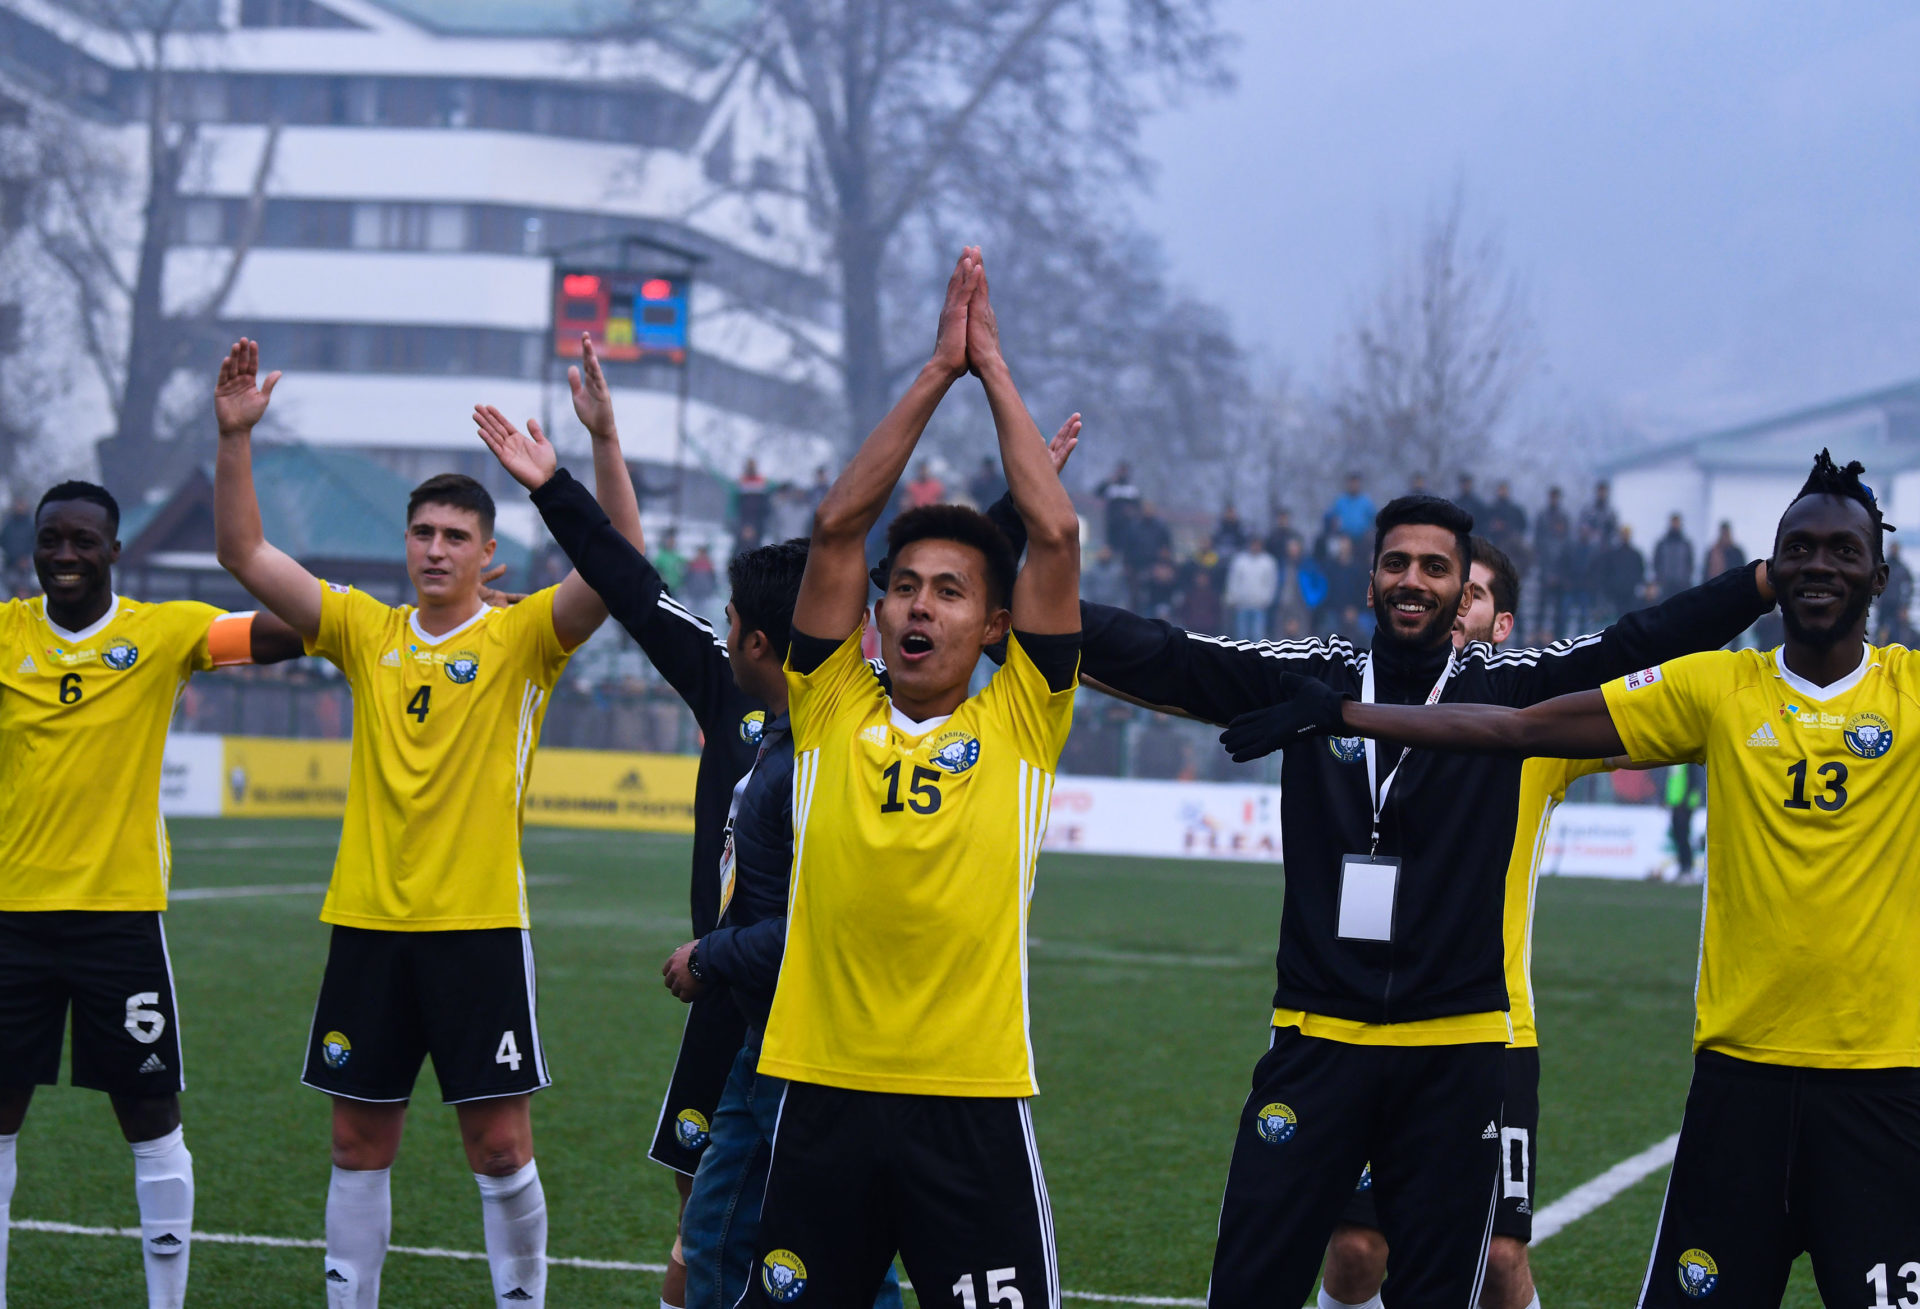 Kashmir berada dalam krisis, tapi bola sepak memberi nyawa kepada mereka